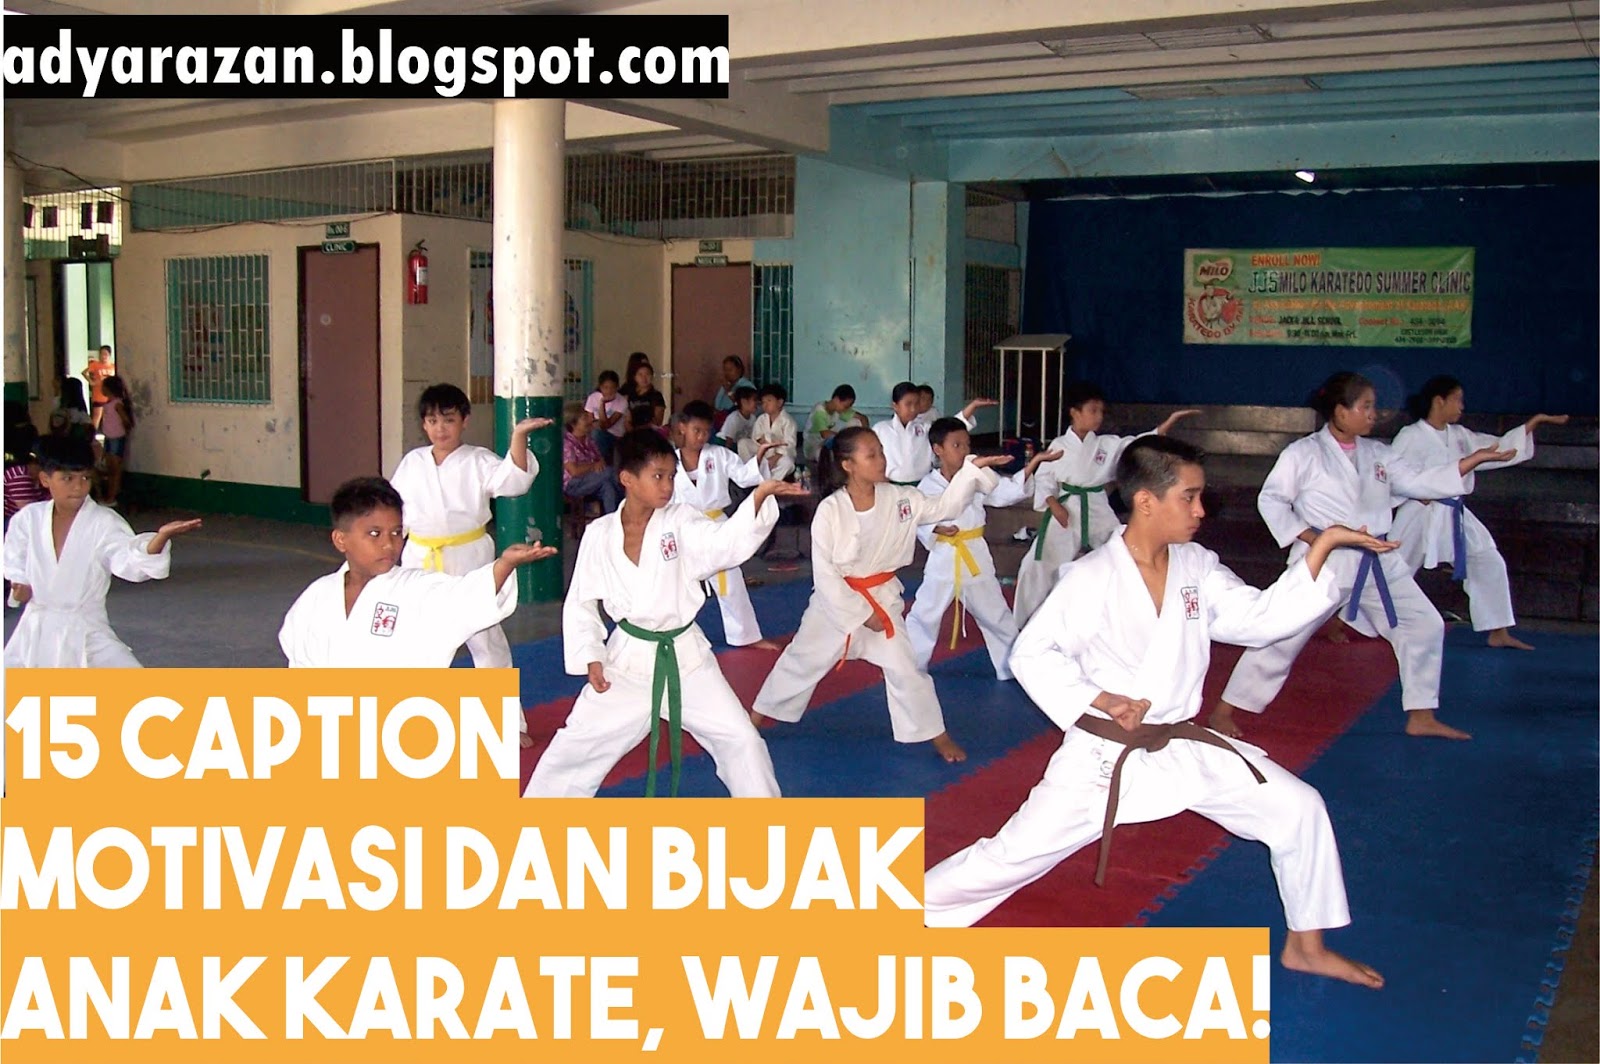 15 Caption Motivasi Dan Bijak Anak Karate